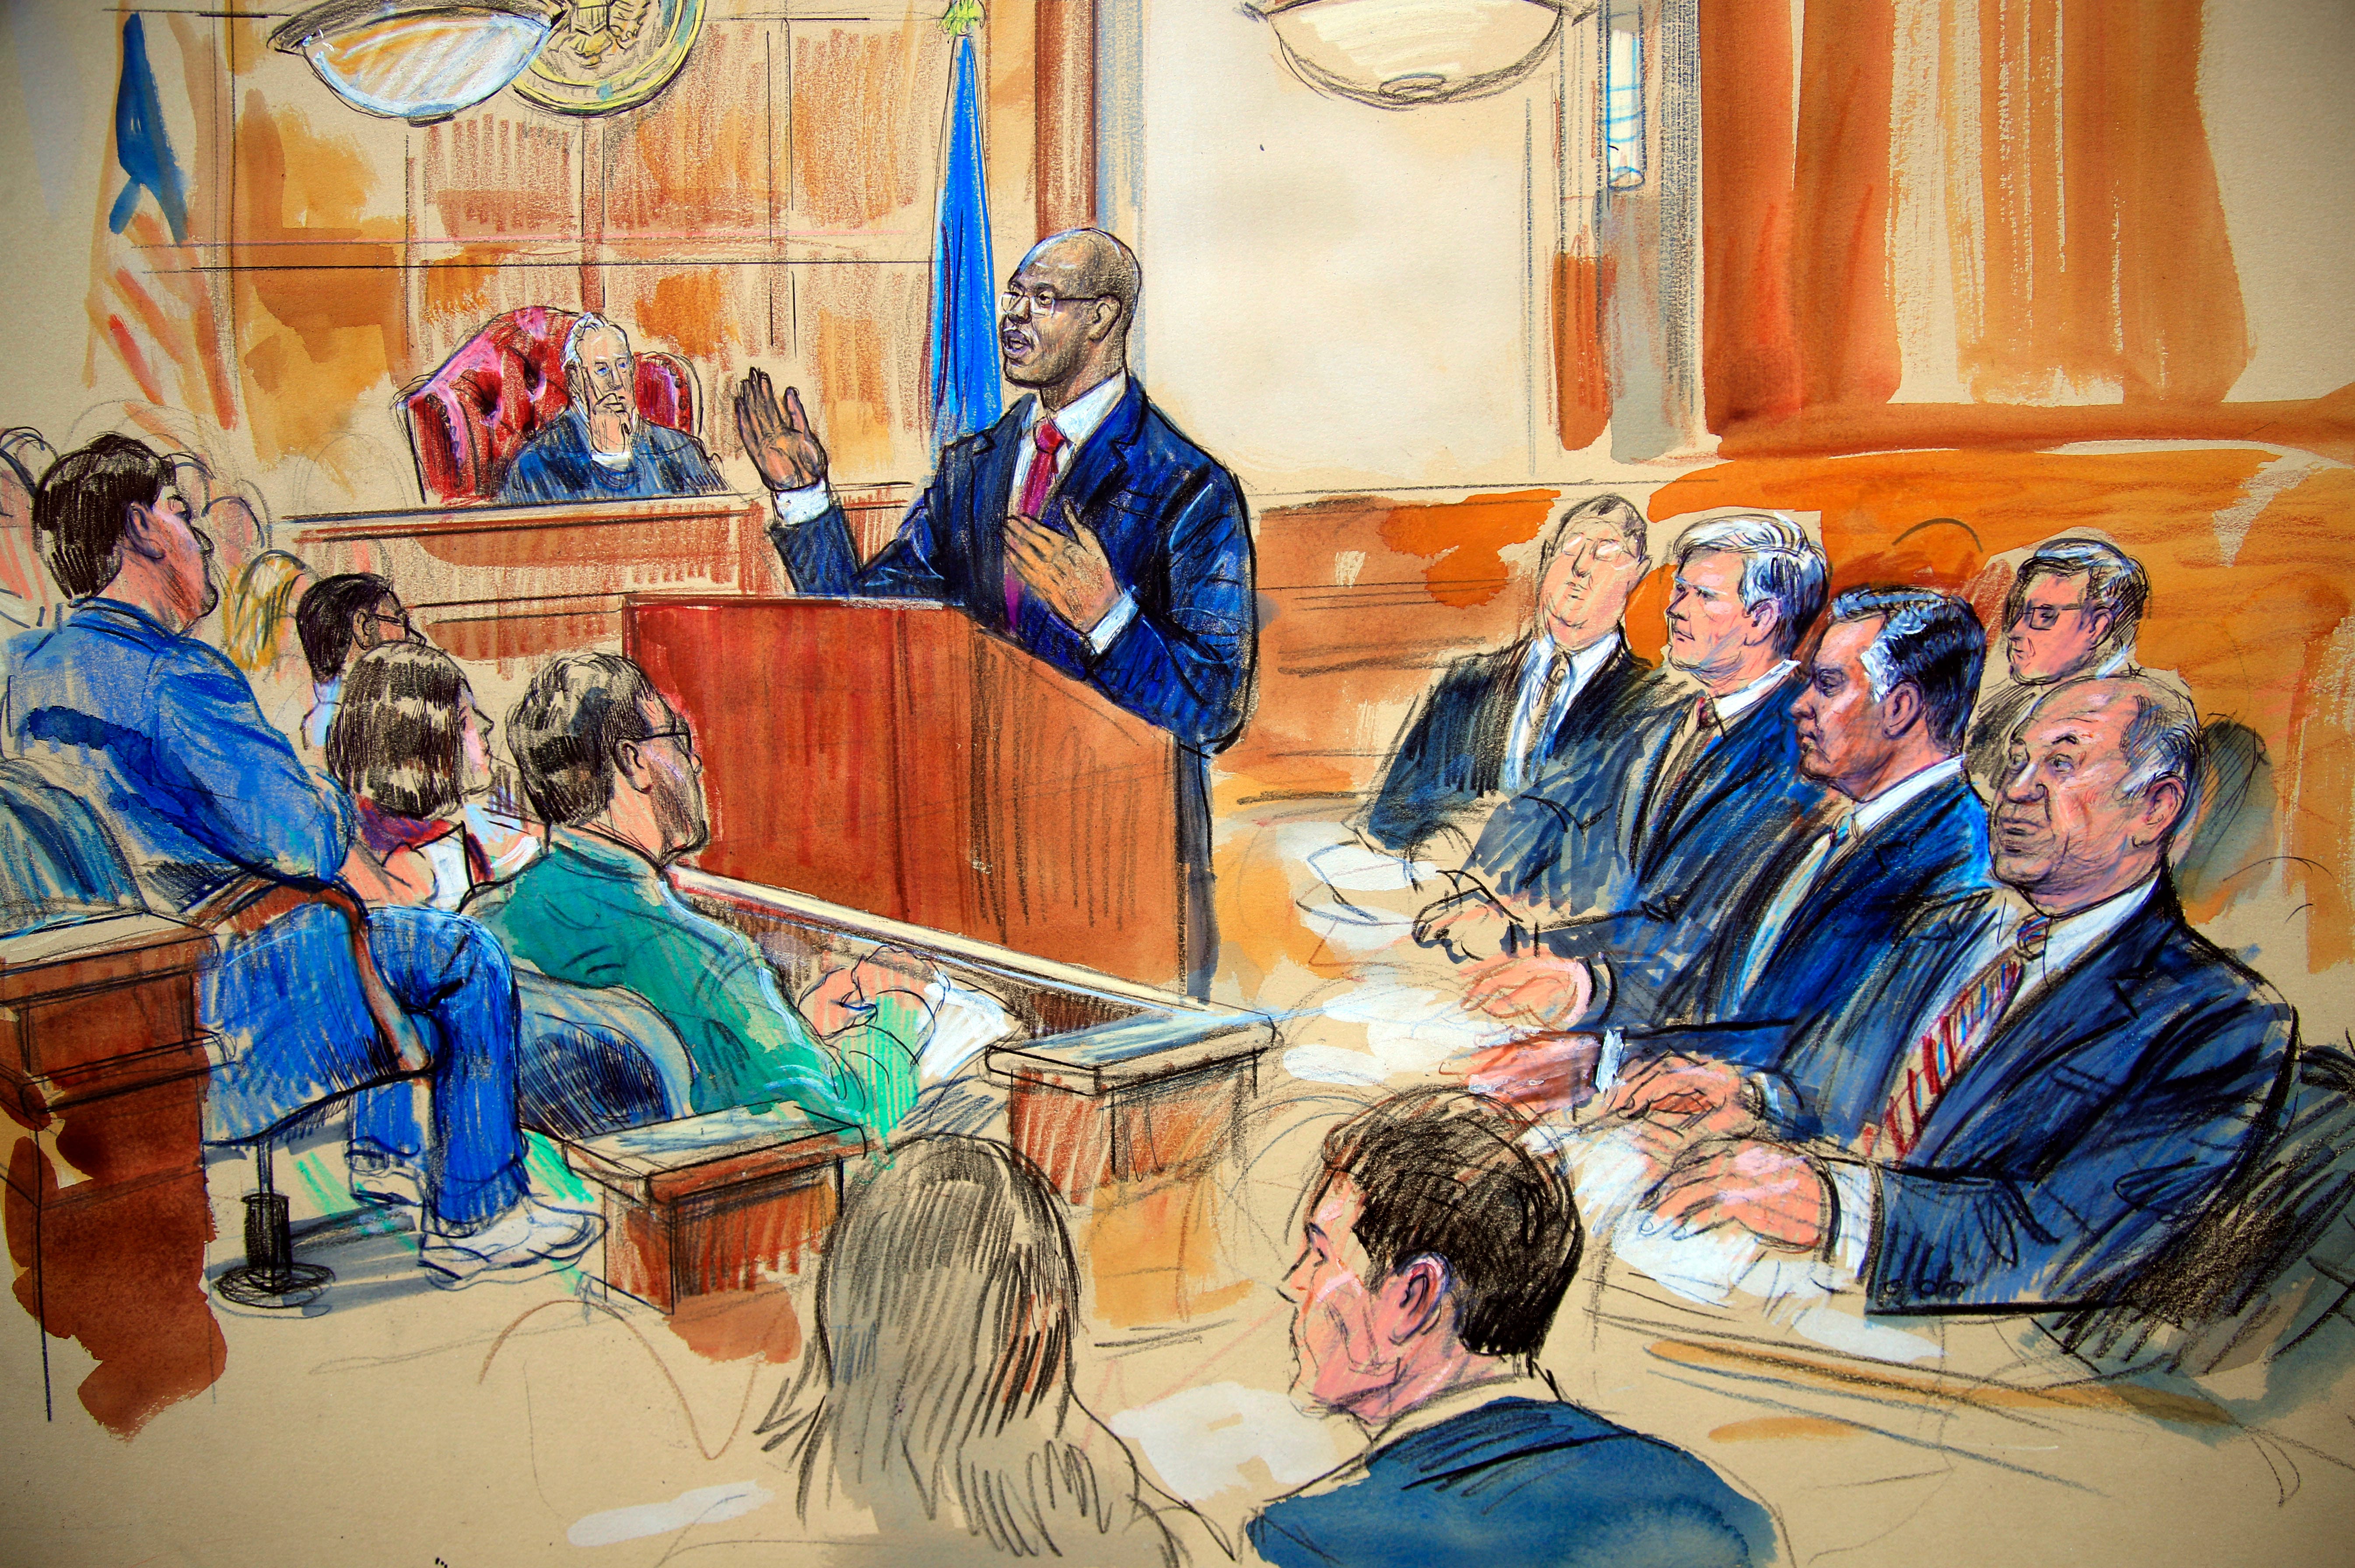 Адвокат защищает подсудимого. Суд зарисовка. Судебное заседание иллюстрации. Зарисовка судебного процесса. Судебные зарисовки США.